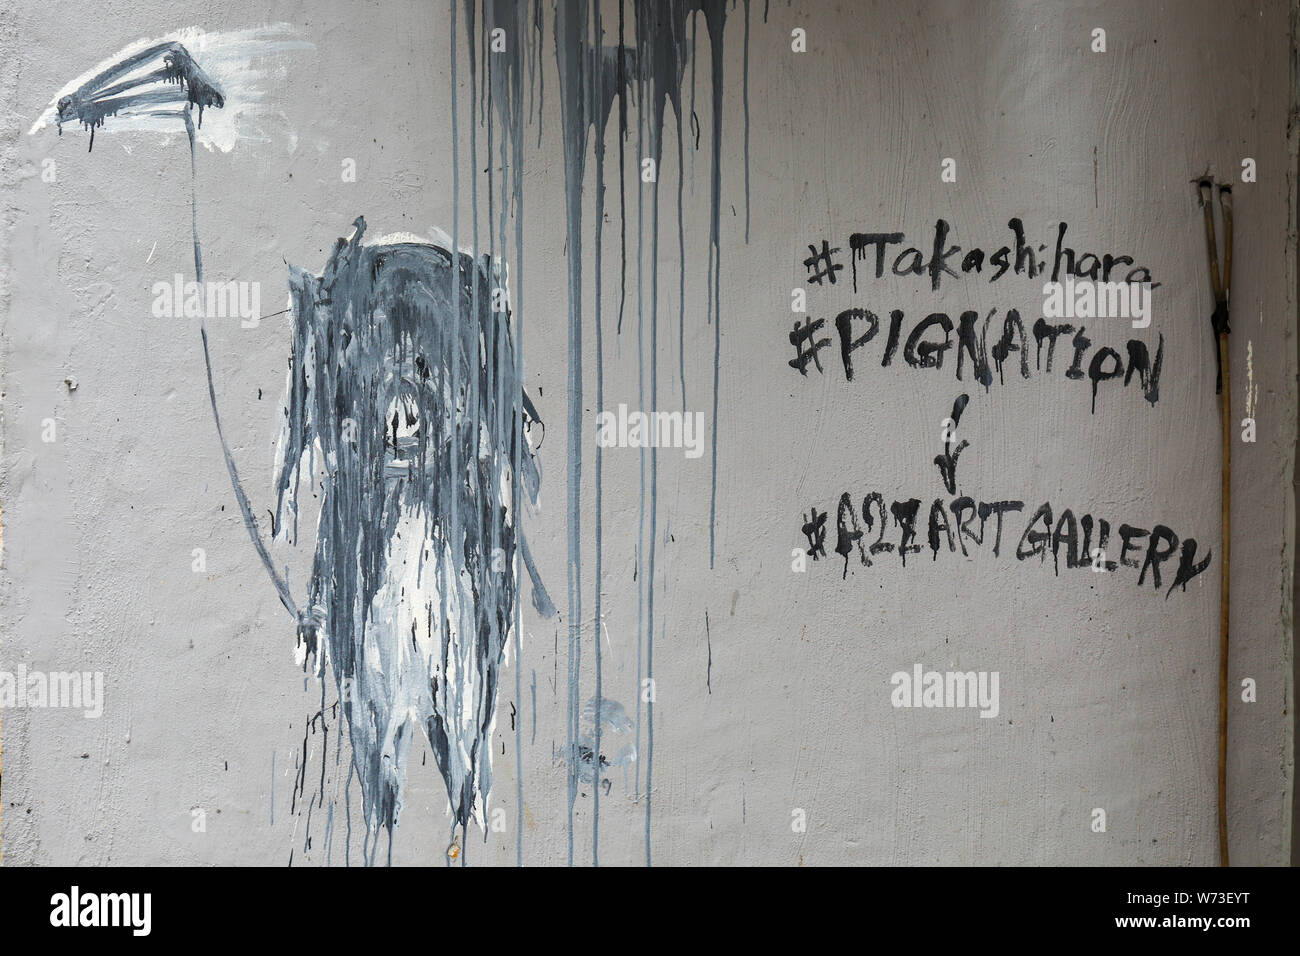 Wandbild an der Gebäudewand Werbung Takashi Hara's Ausstellung 'Pig Nation - eine Geschichte der Menschheit "in einer 2 Z art Gallery in Hongkong Stockfoto